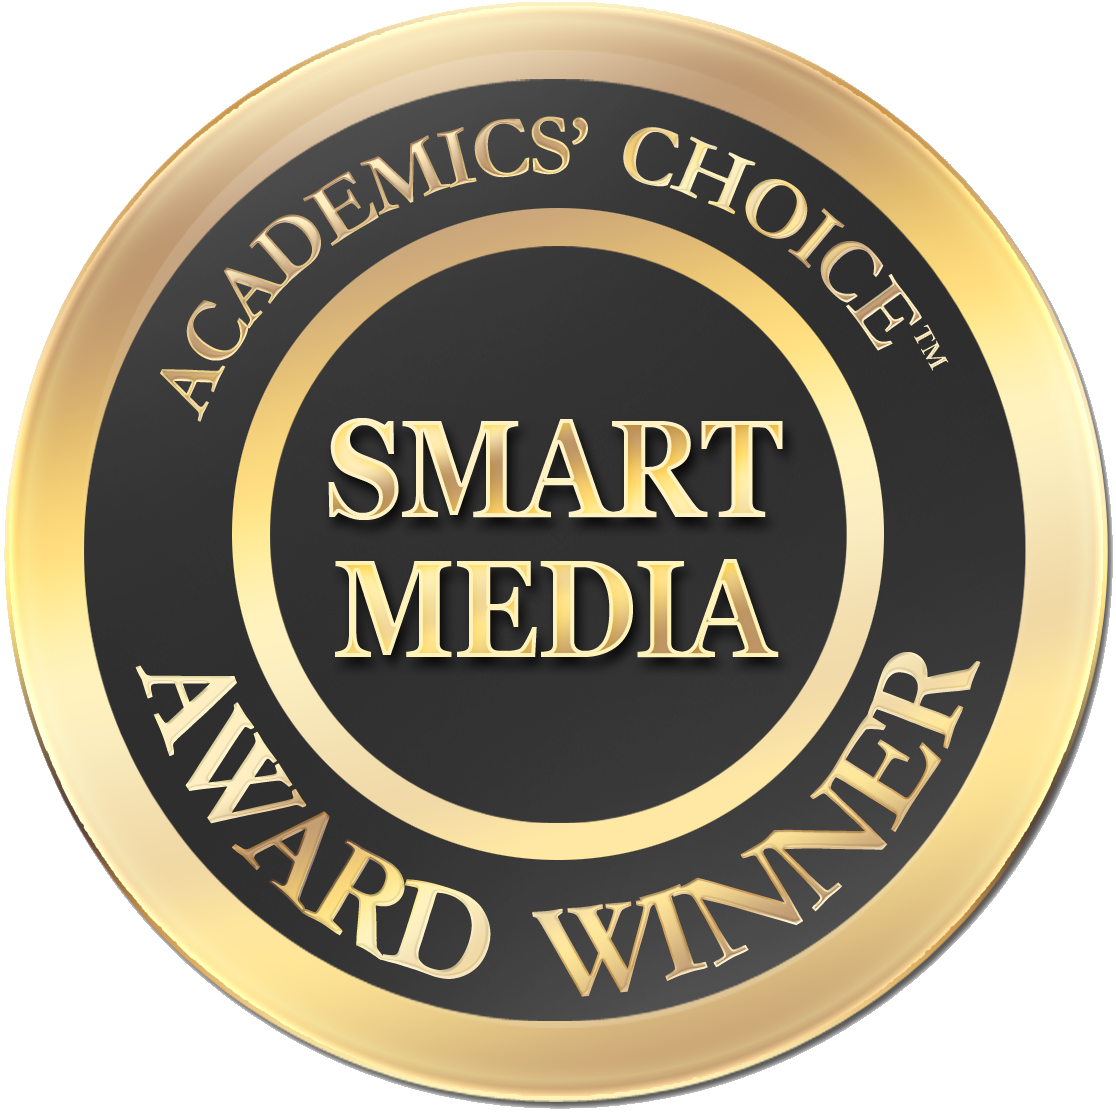 Smart Media Award Winner